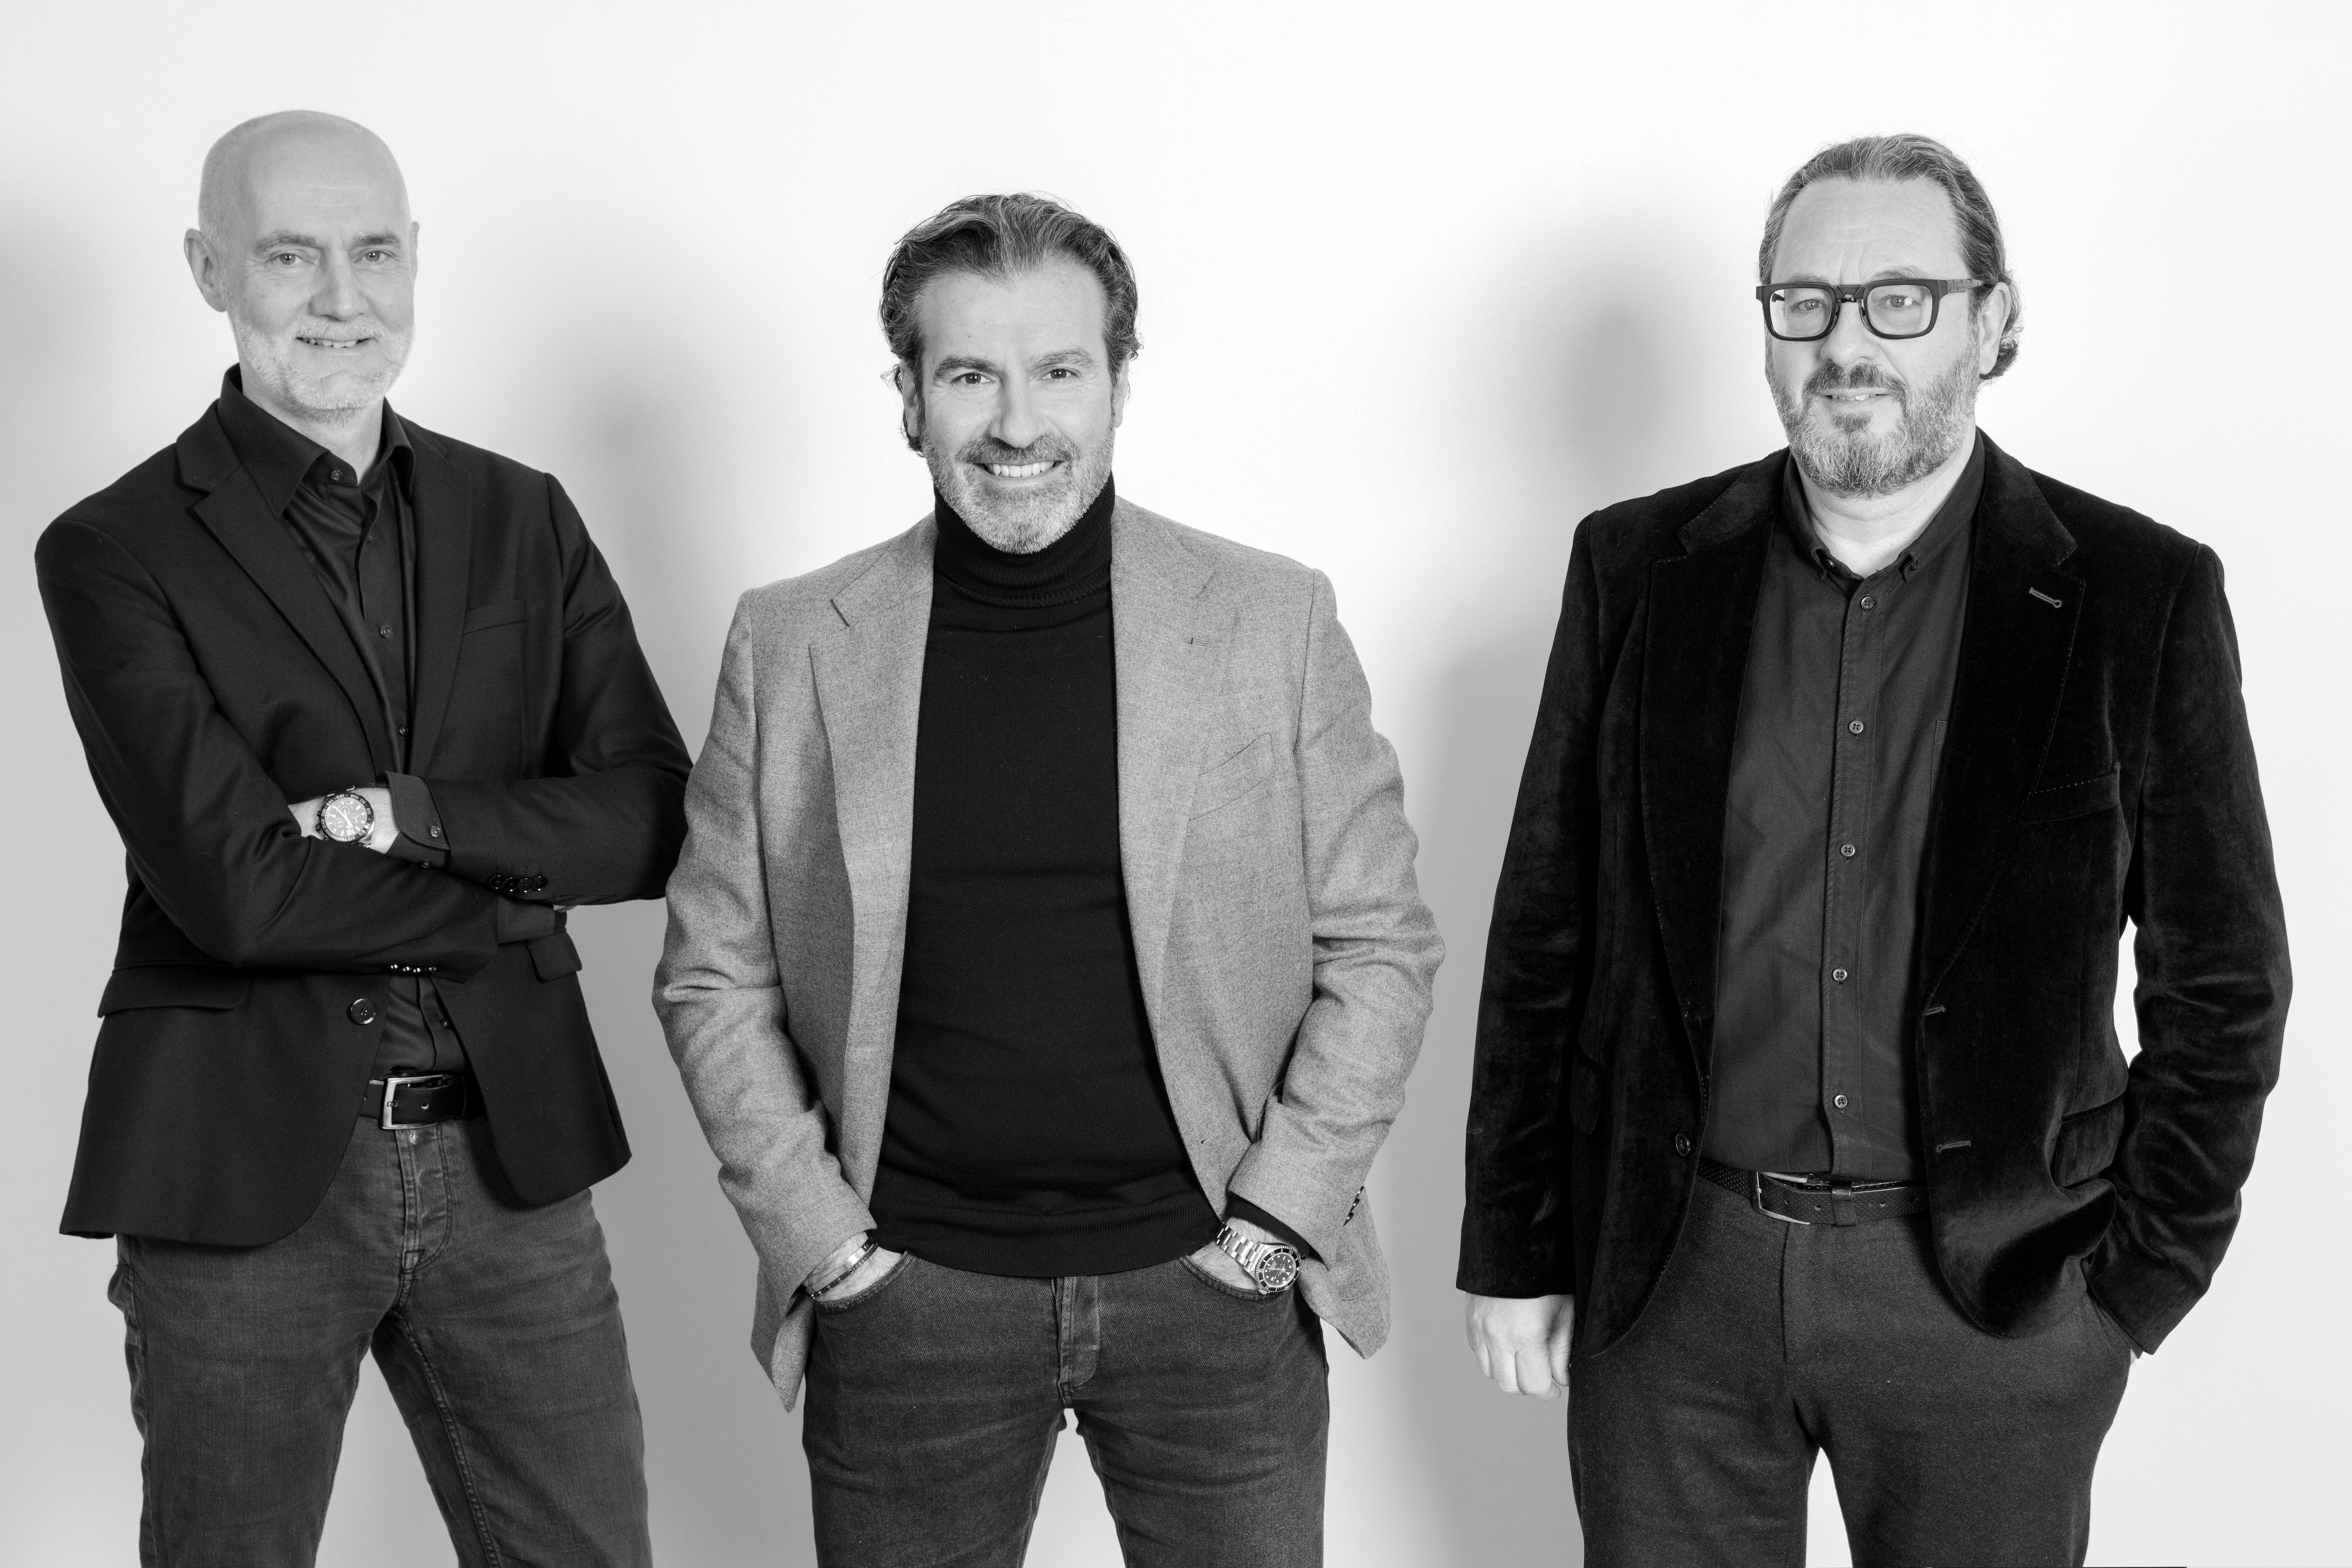 De gauche à droite: Alain Frisson, secondfloor; Olivier Bialek, secondfloor; Erik Struys, UPR Agency